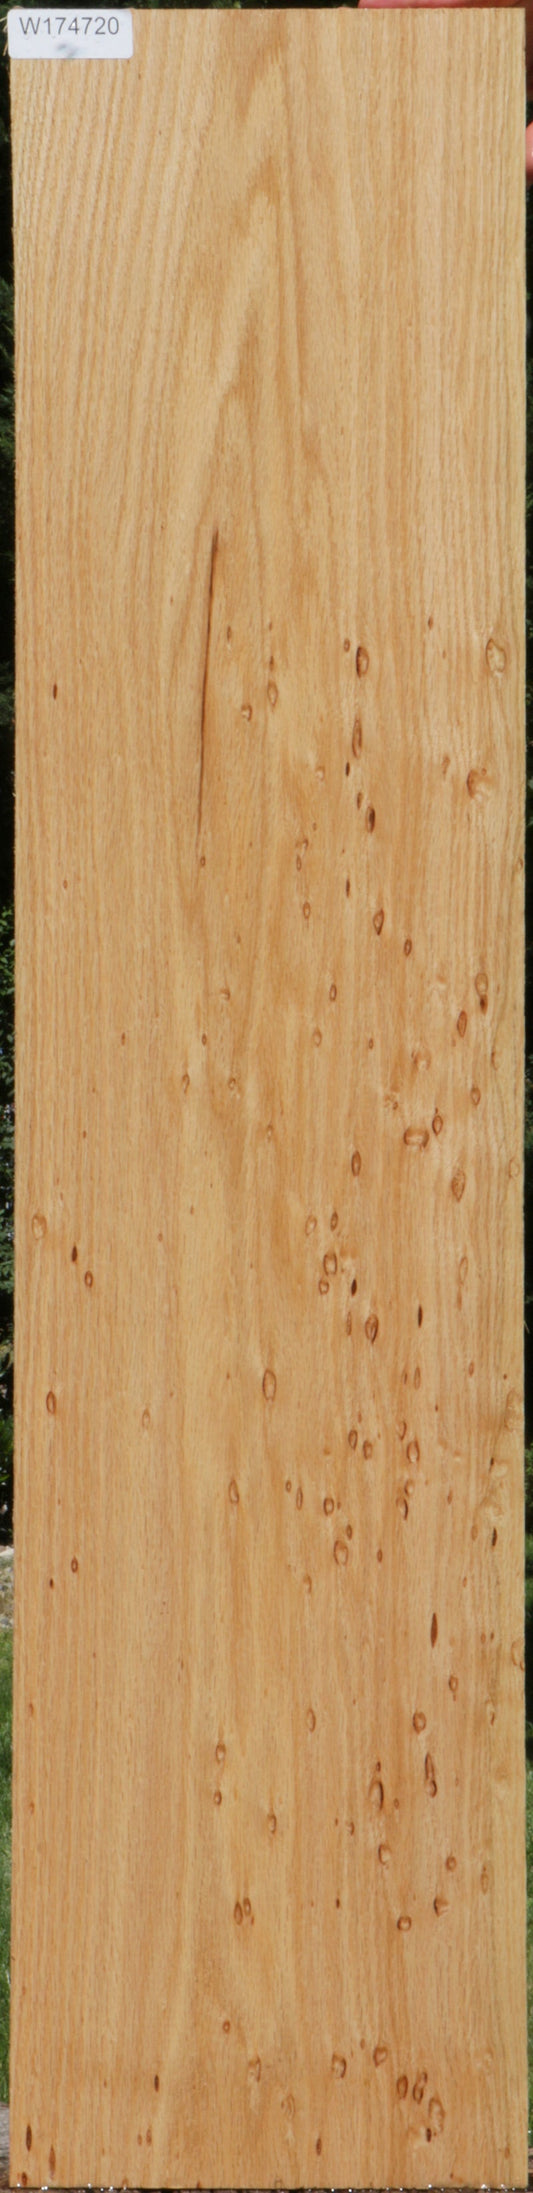 Birdseye Red Oak Lumber